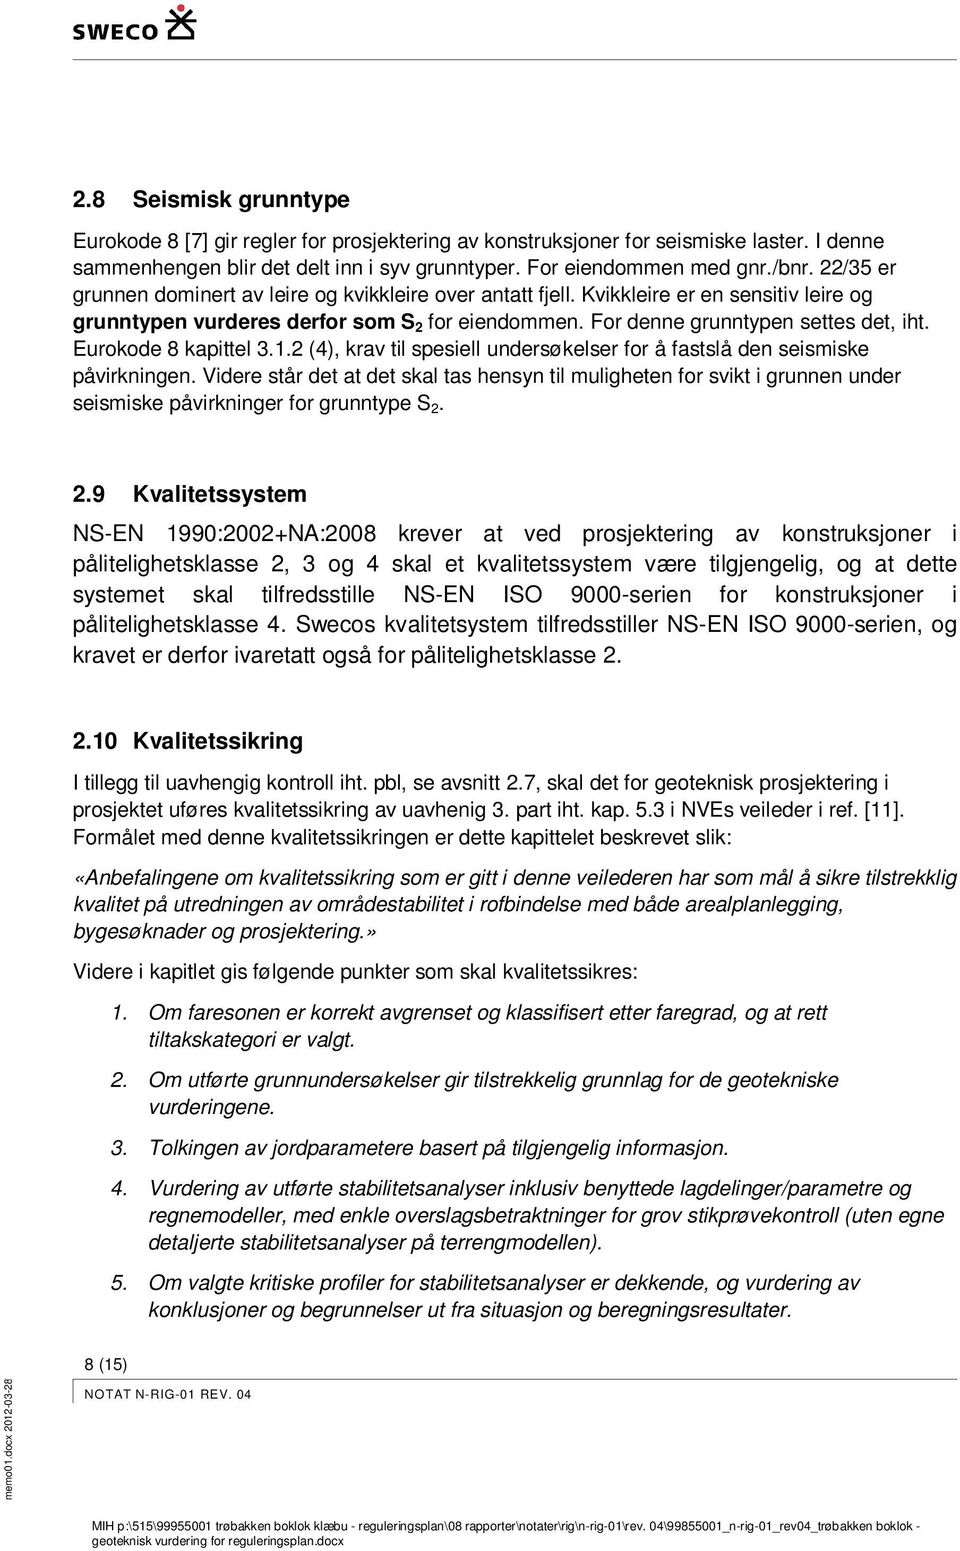 Eurokode 8 kapittel 3.1.2 (4), krav til spesiell undersøkelser for å fastslå den seismiske påvirkningen.